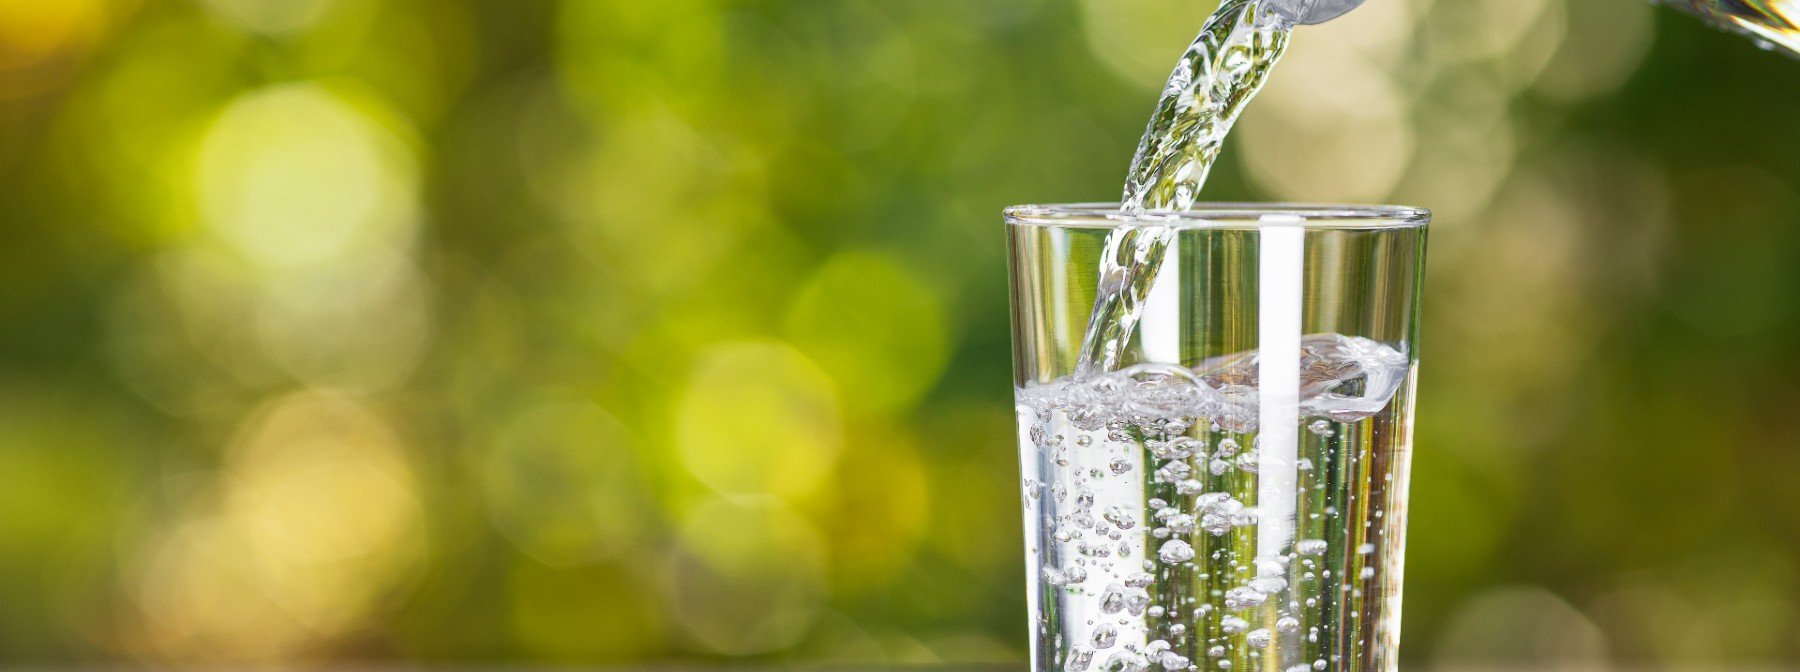 Cât de multă apă ar trebui să beau într-o zi?